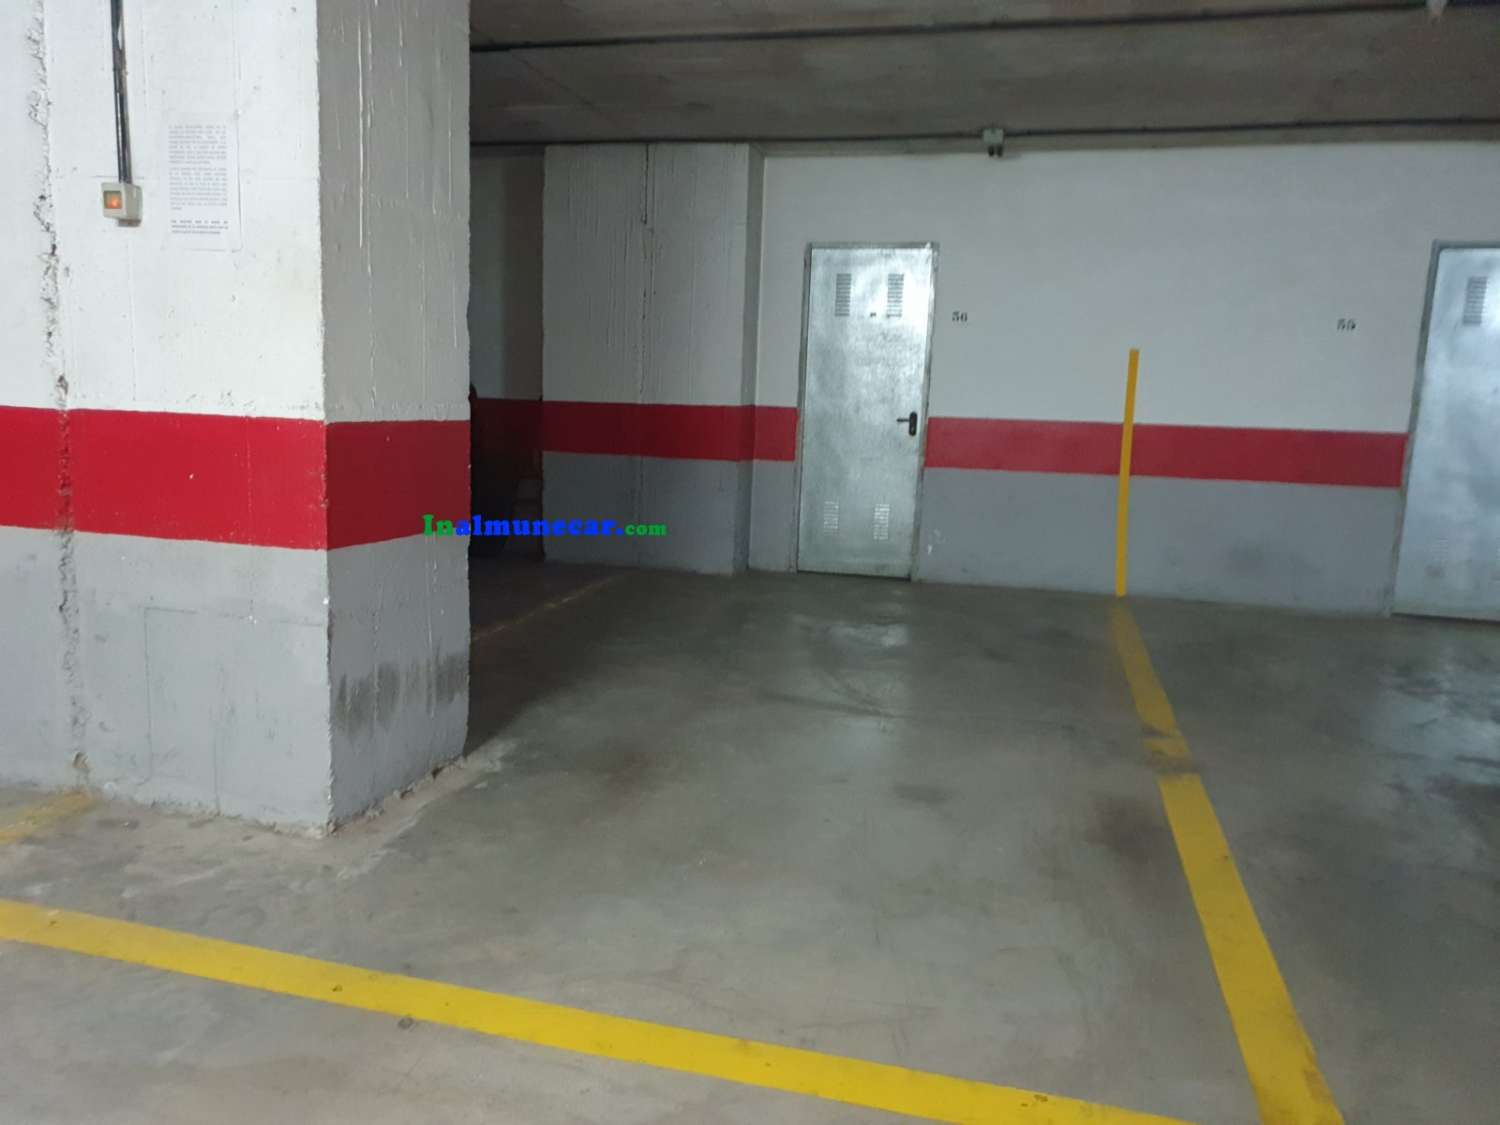 Lejlighed til salg i Almuñécar med parkeringsplads og opbevaringsrum